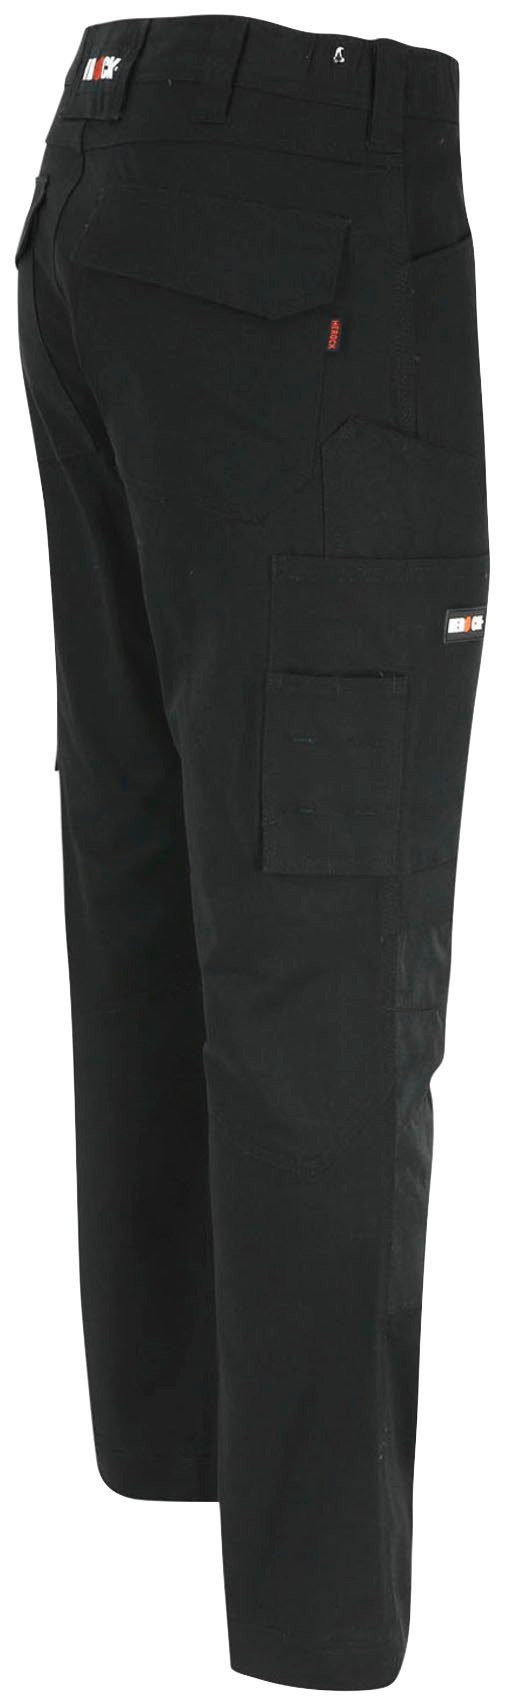 Herock Arbeitshose DERO Slim Fit Multi-Pocket, 2-Wege-Stretch, schwarz Passform, wasserabweisend